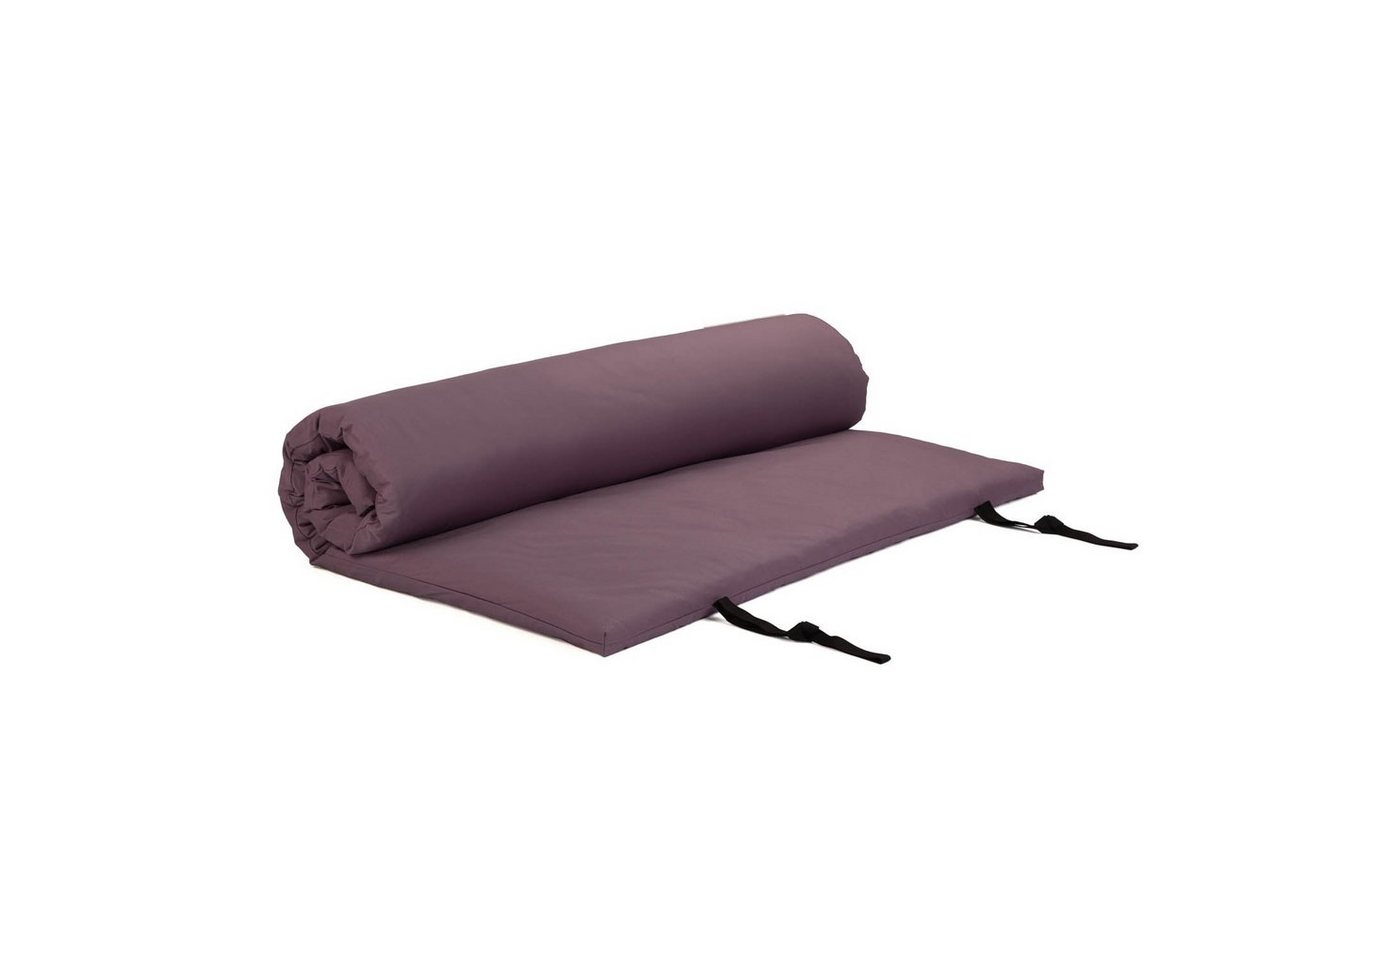 Welltouch Meditationskissen Shiatsumatte mit abnehmbarem Bezug 100x200 cm, dusty purple, 4 lagig von Welltouch